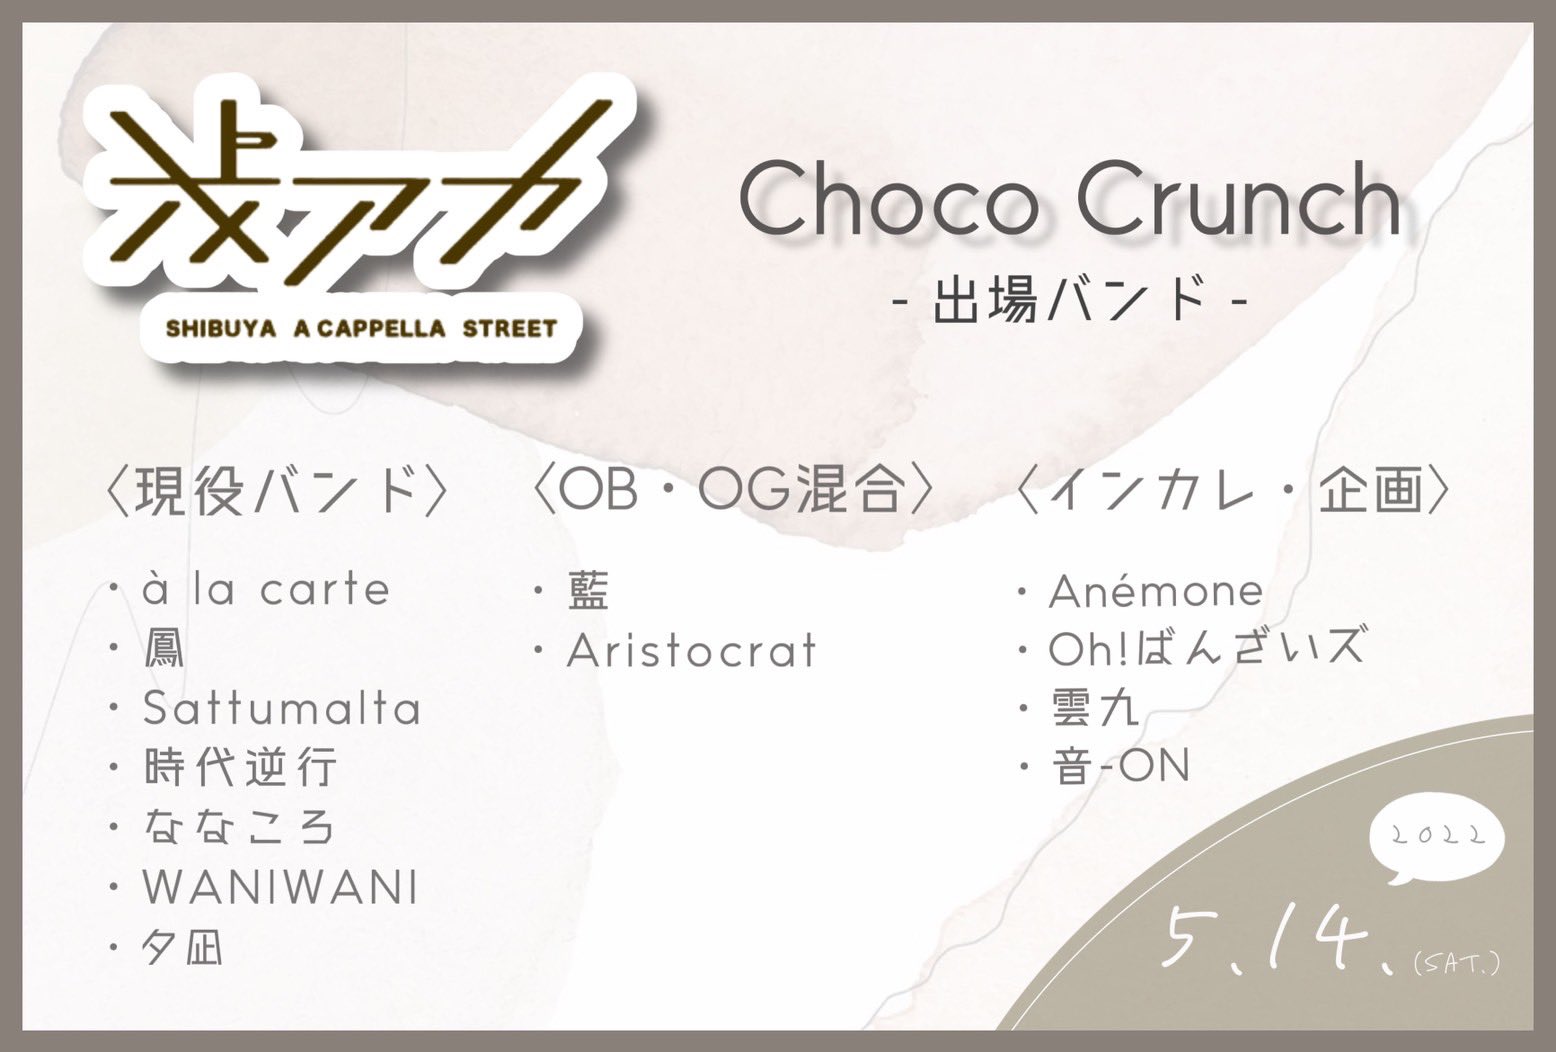 早稲田大学アカペラサークル Choco Crunch (@Choco_acappella) / Twitter